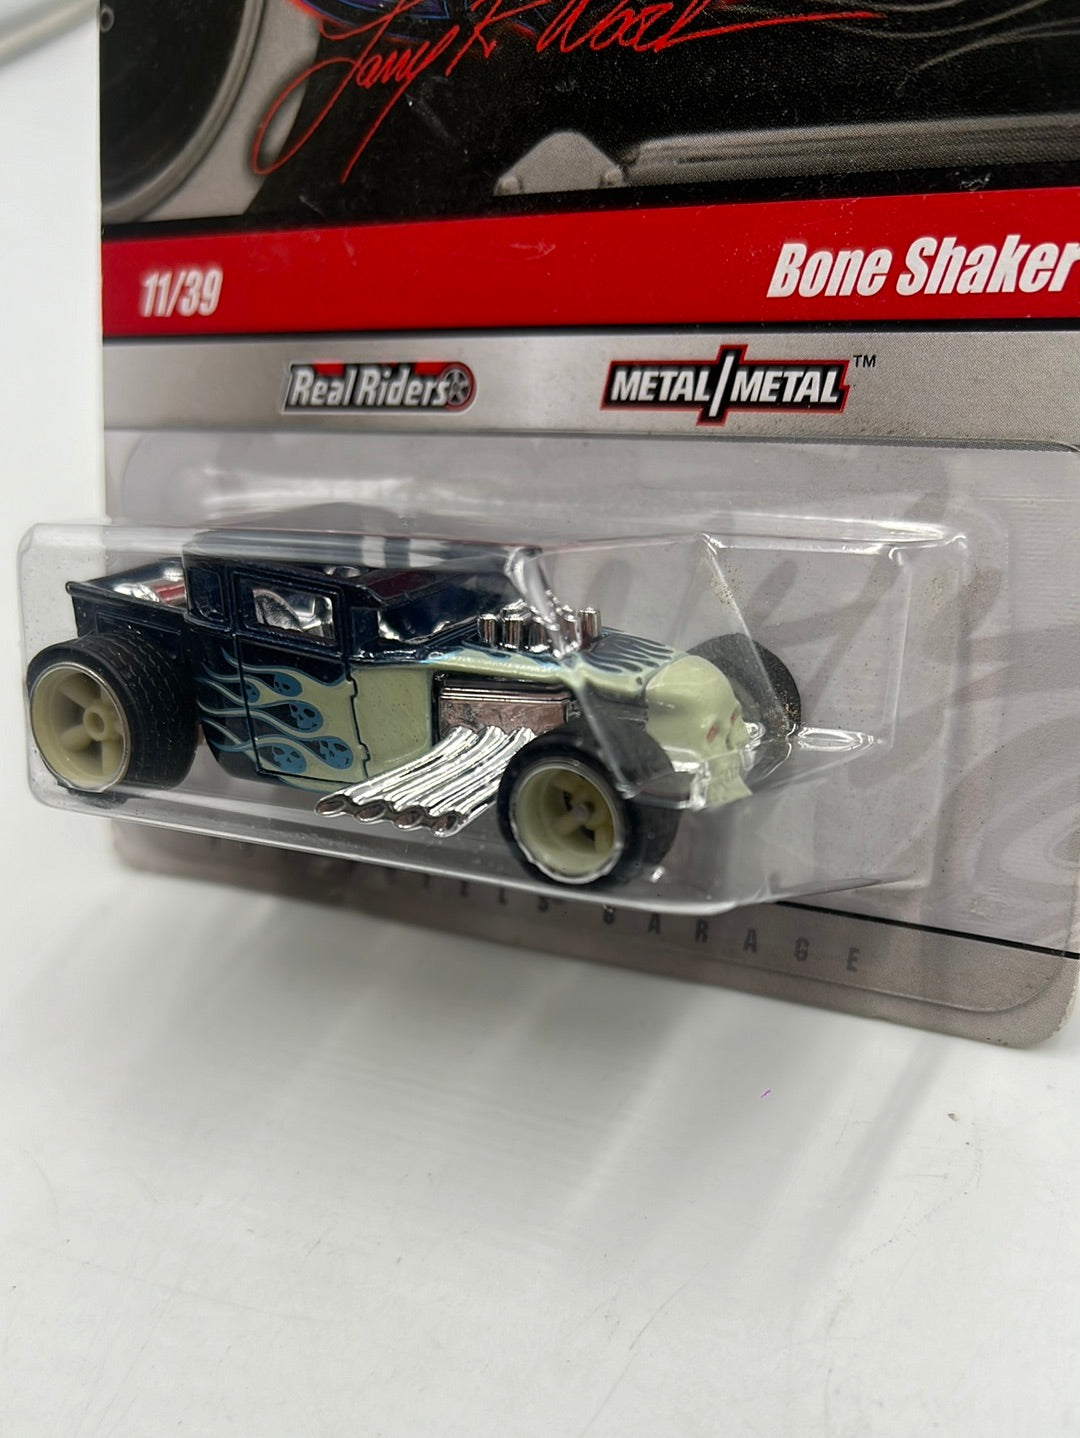 Hot wheels Larrys Garage Bone Shaker 11/39